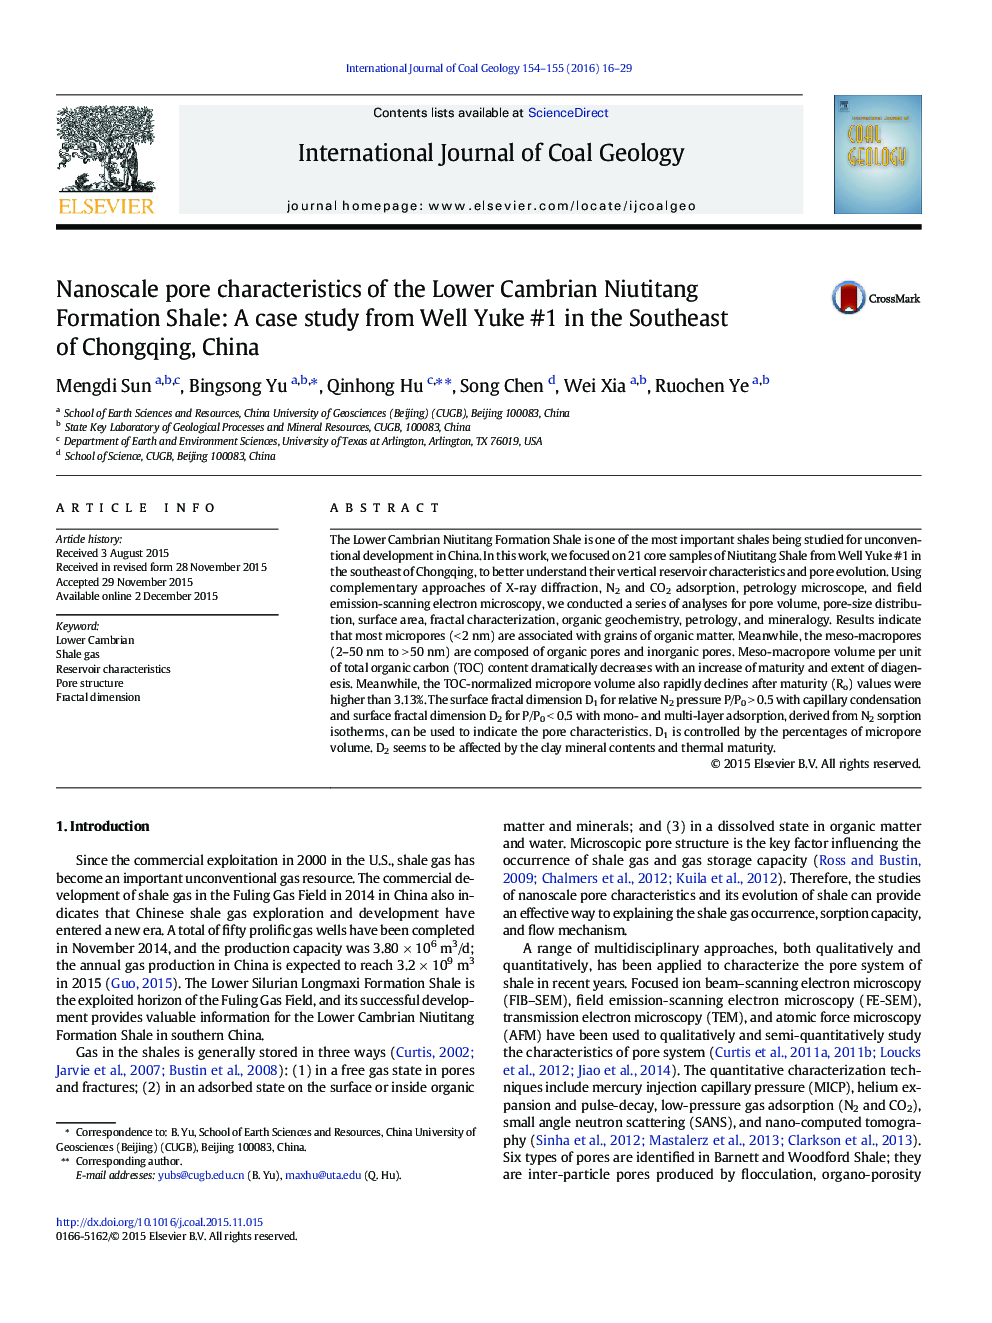 ویژگی منافذ نانو از پایین کامبرین Niutitang سازند شیل: مطالعه موردی از Well Yuke # 1 در جنوب شرقی از چونگ کینگ، چین